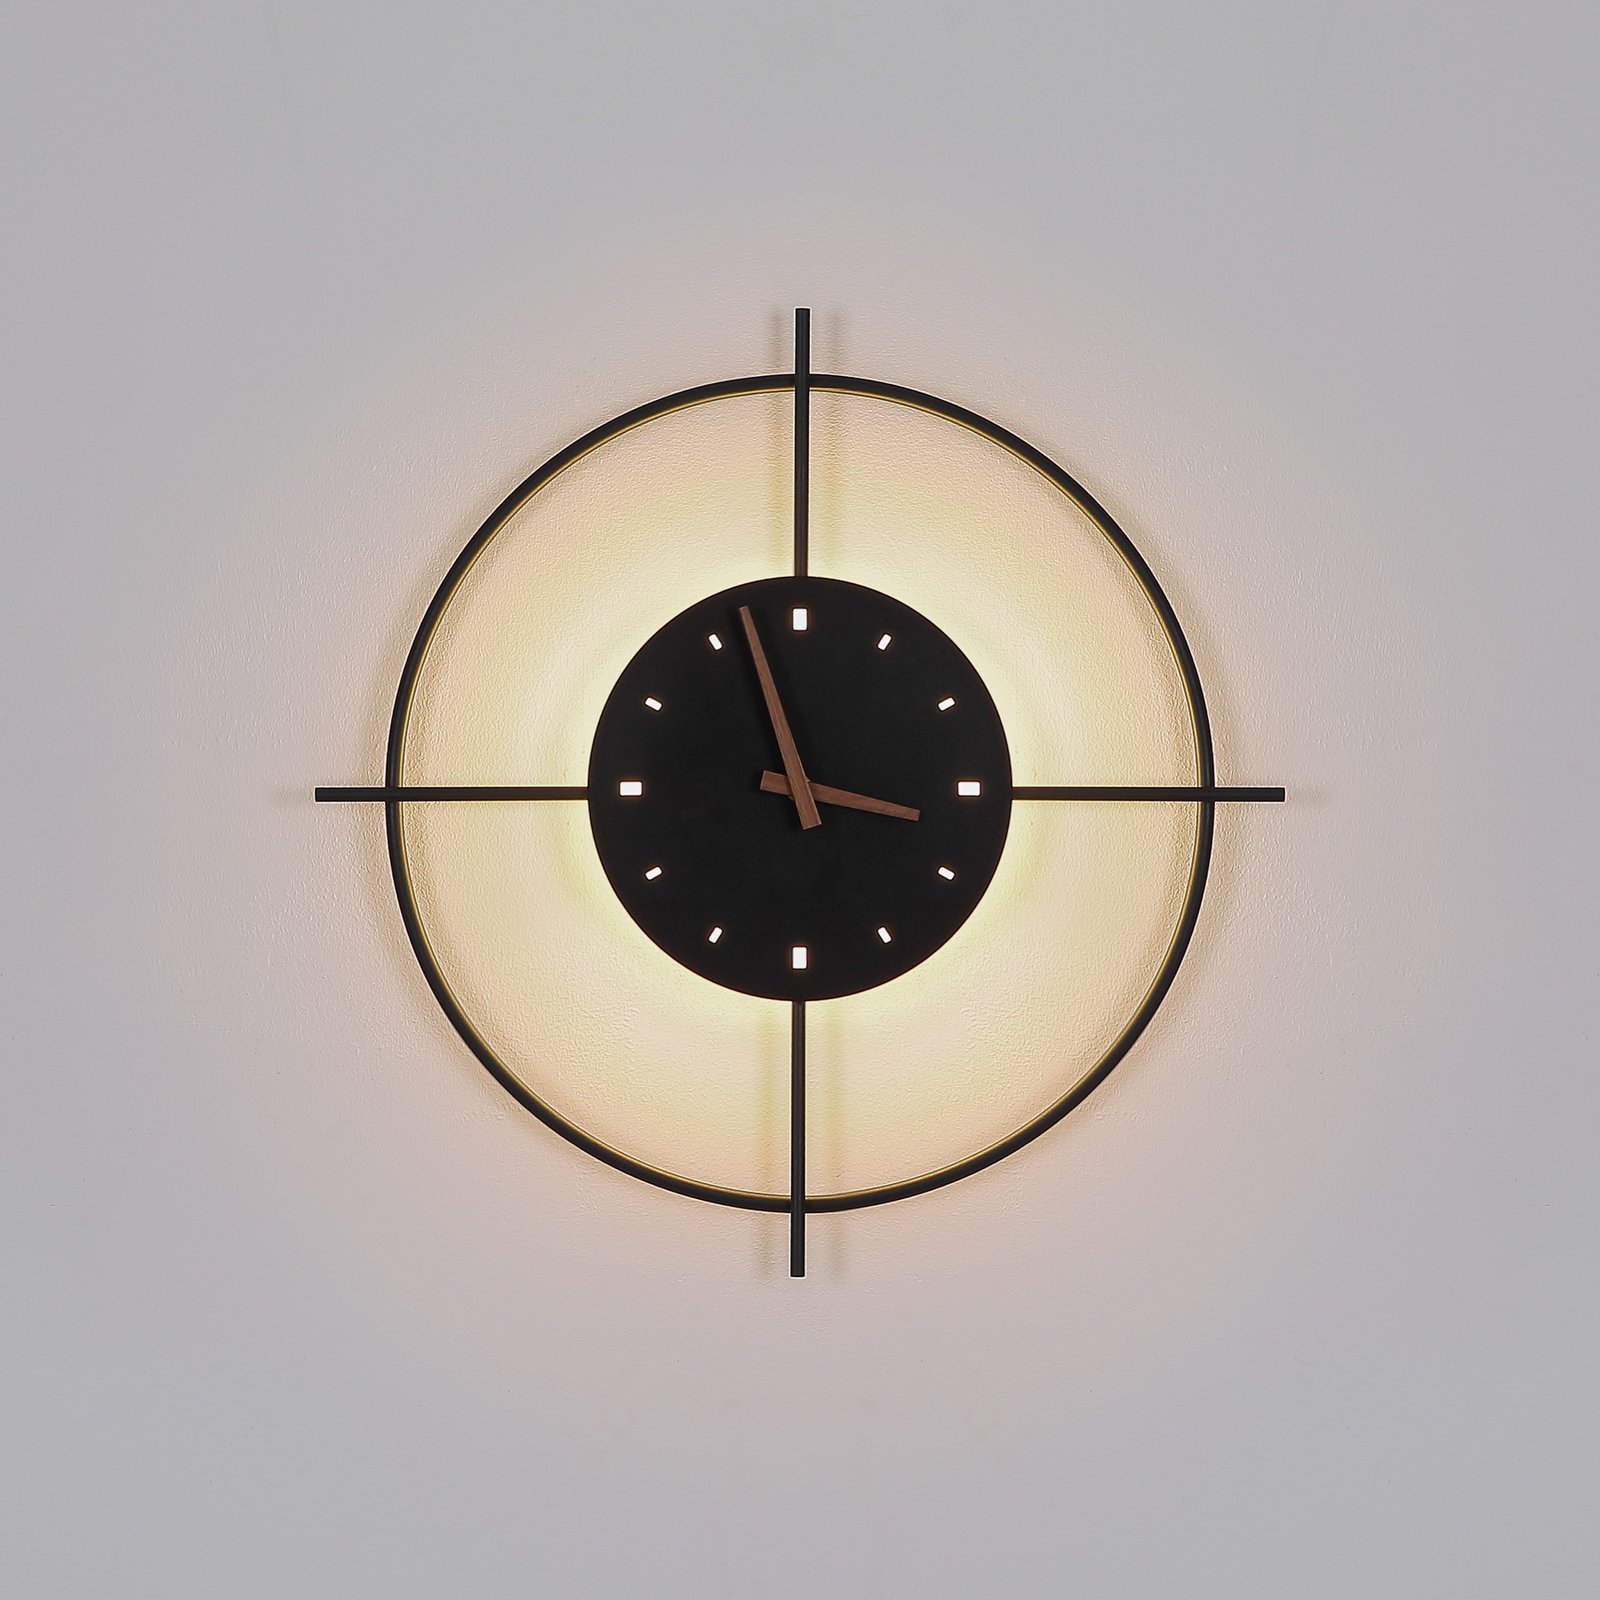 LED-Wandlampe Sussy mit Uhr, schwarz, Ø 50 cm